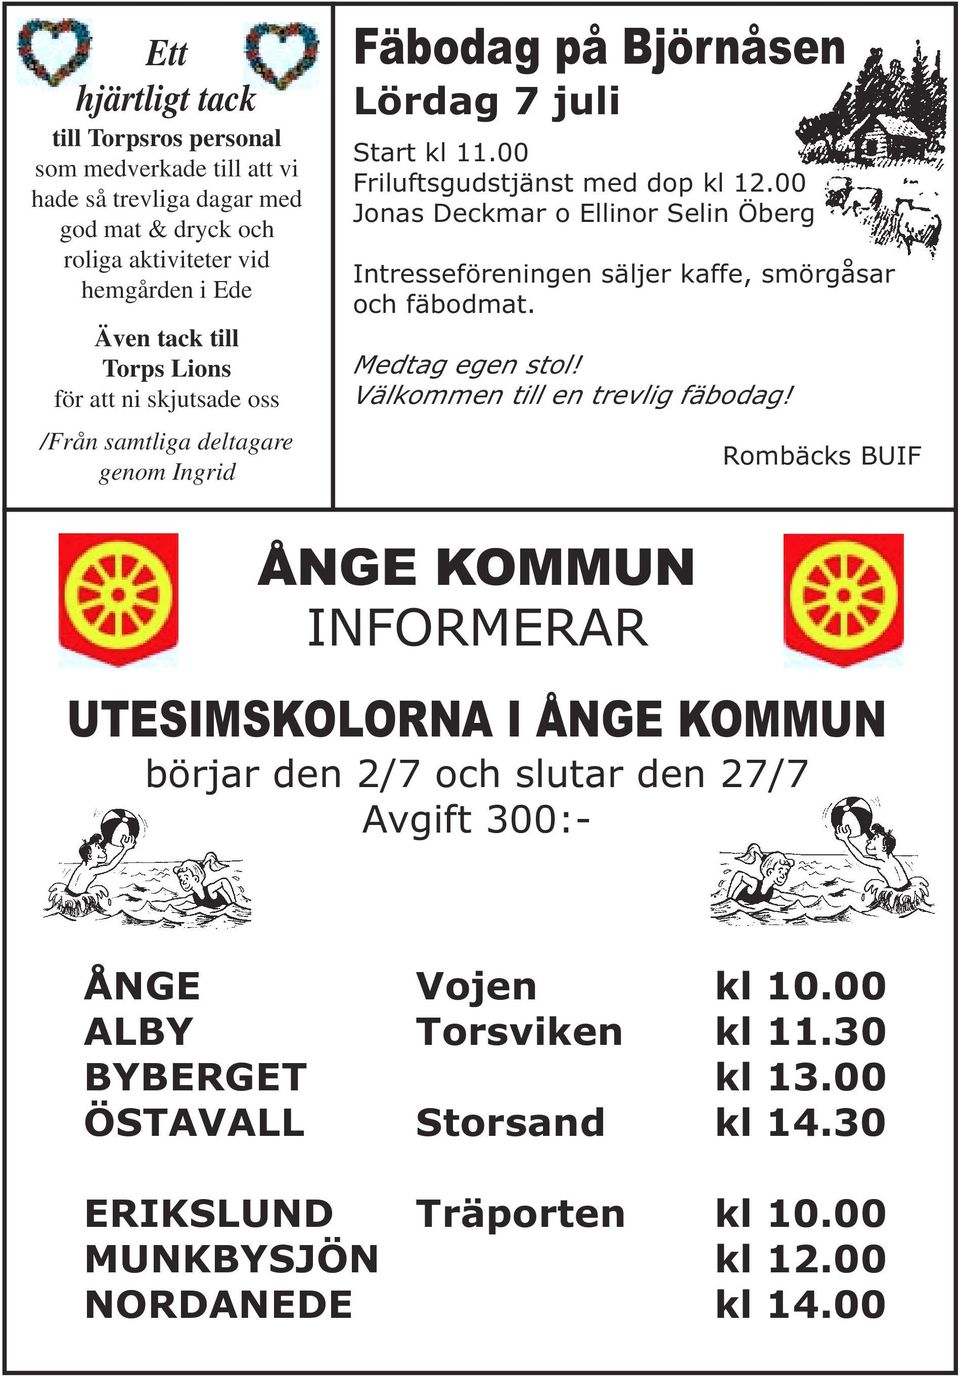 00 Jonas Deckmar o Ellinor Selin Öberg Intresseföreningen säljer kaffe, smörgåsar och fäbodmat. Medtag egen stol! Välkommen till en trevlig fäbodag!